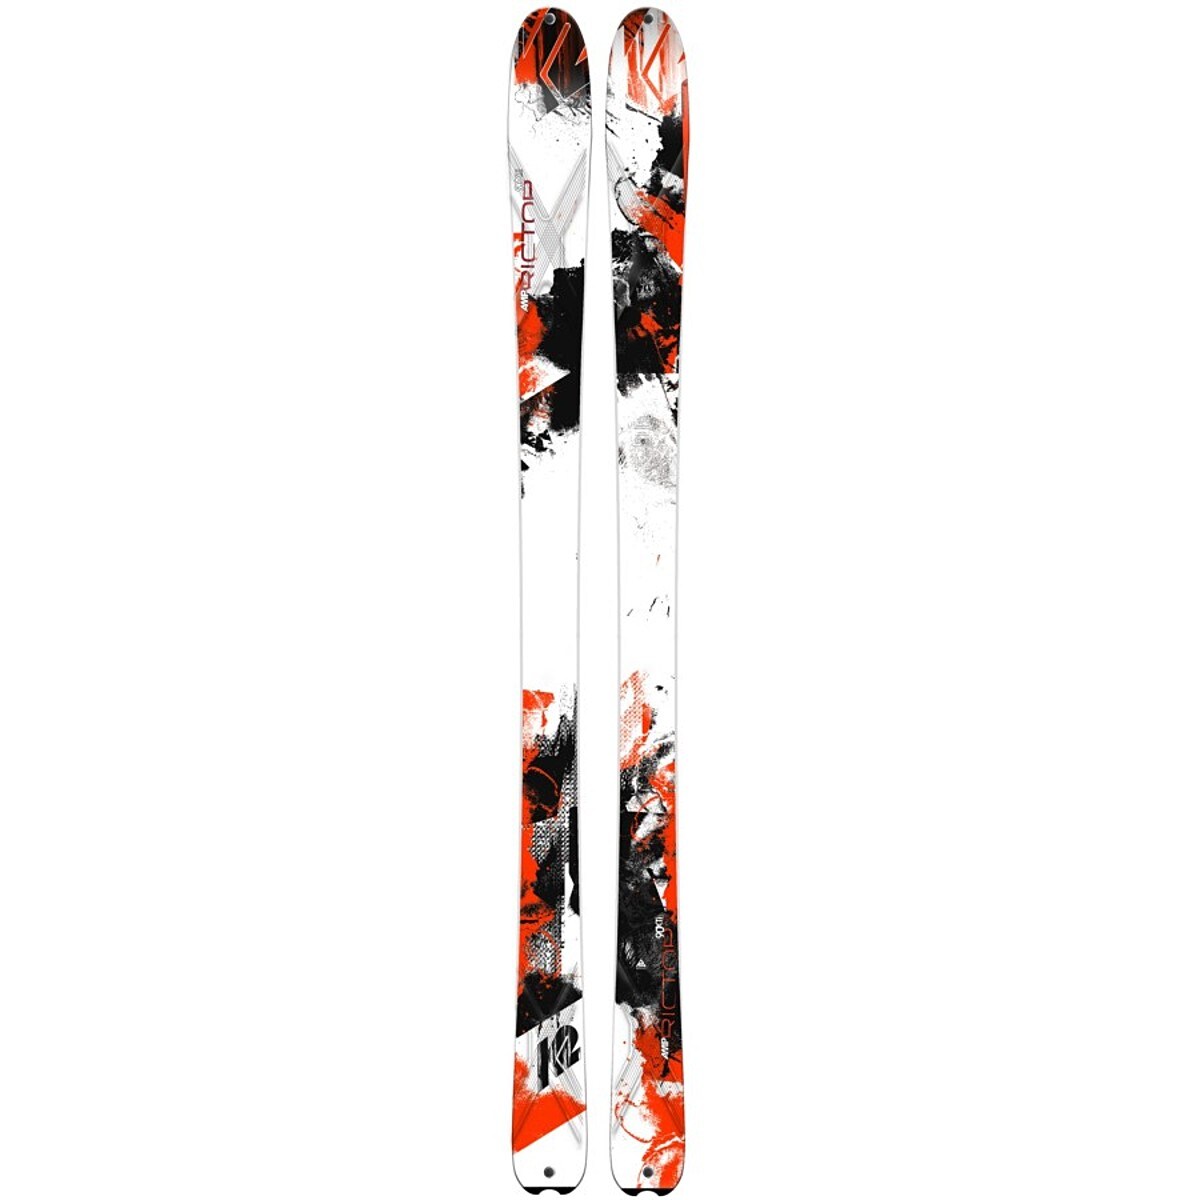 14000円通販セール 店舗 在庫限りの特価 スキー板 K2 AMP RICTOR 90 